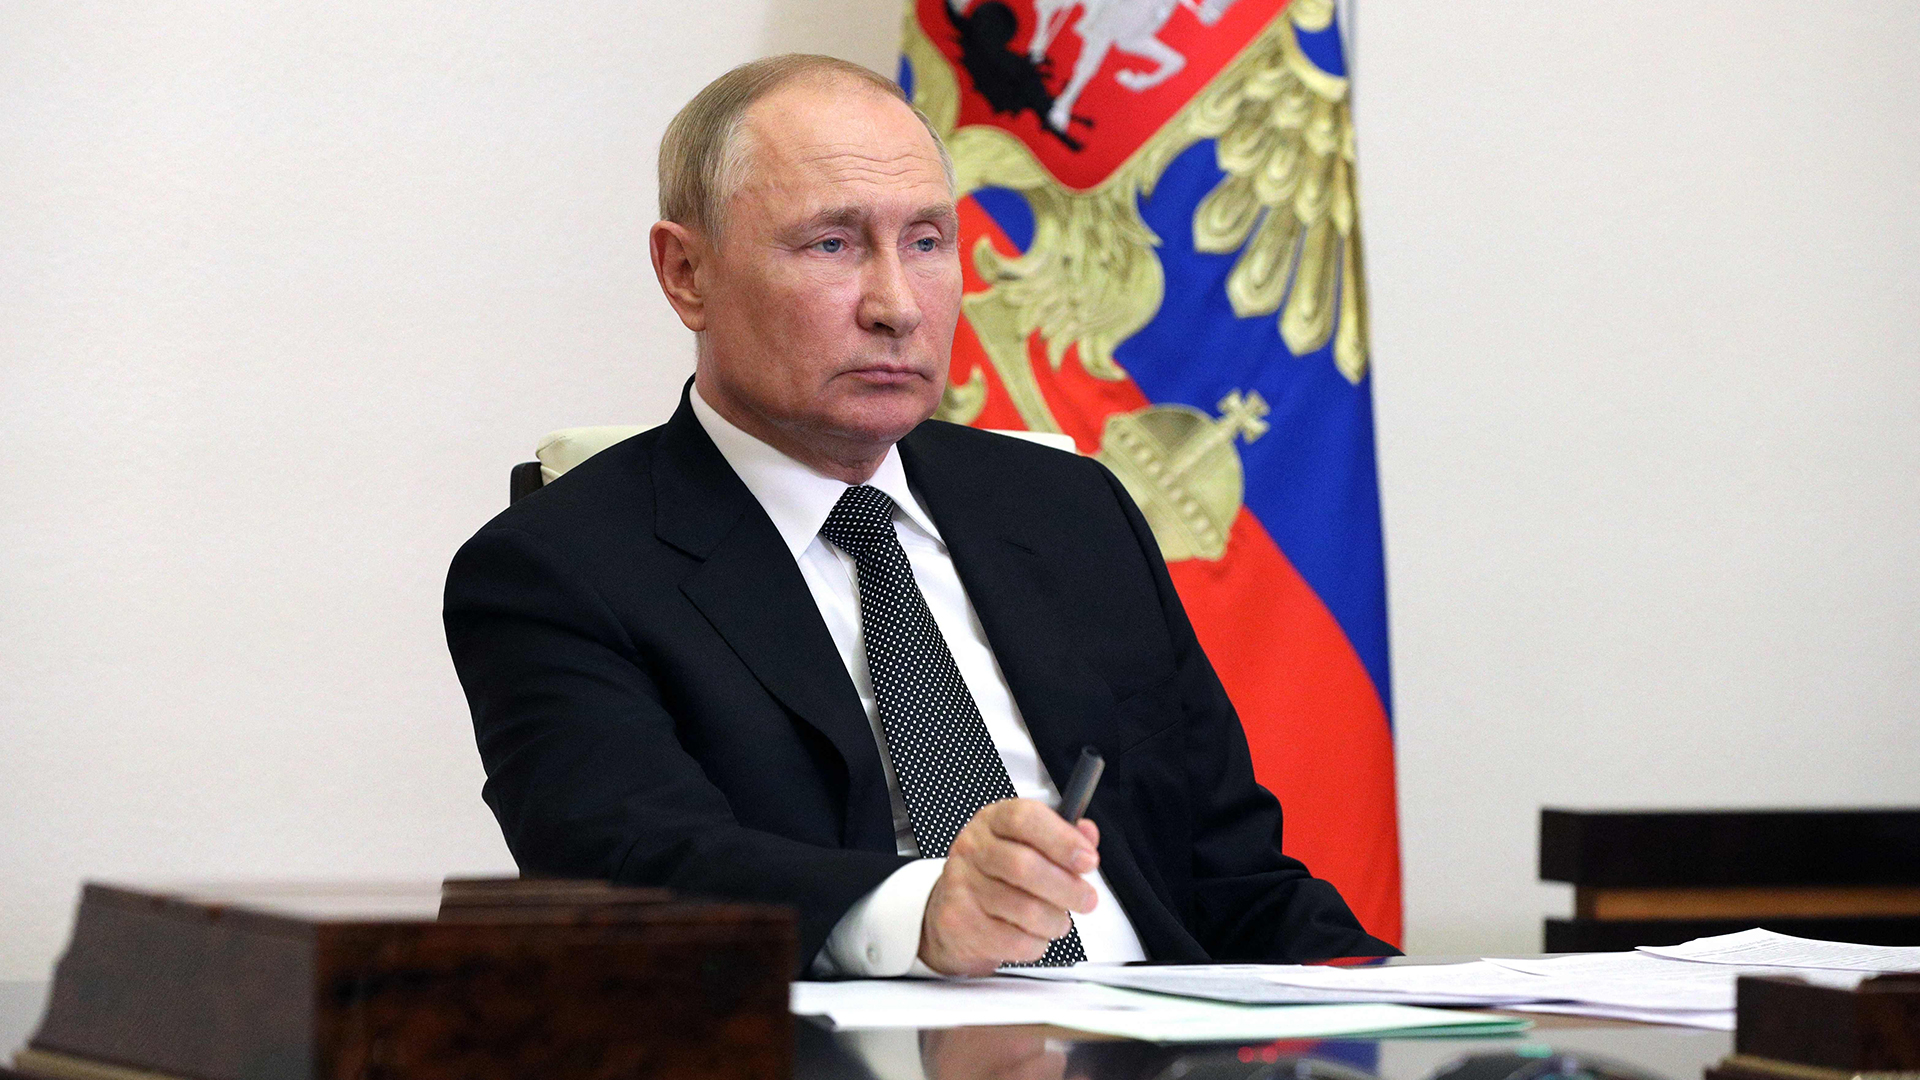 Russlands Präsident Wladimir Putin sitzt an einem Schreibtisch - während einer Videokonferenz am 16. August 2022.  | AFP